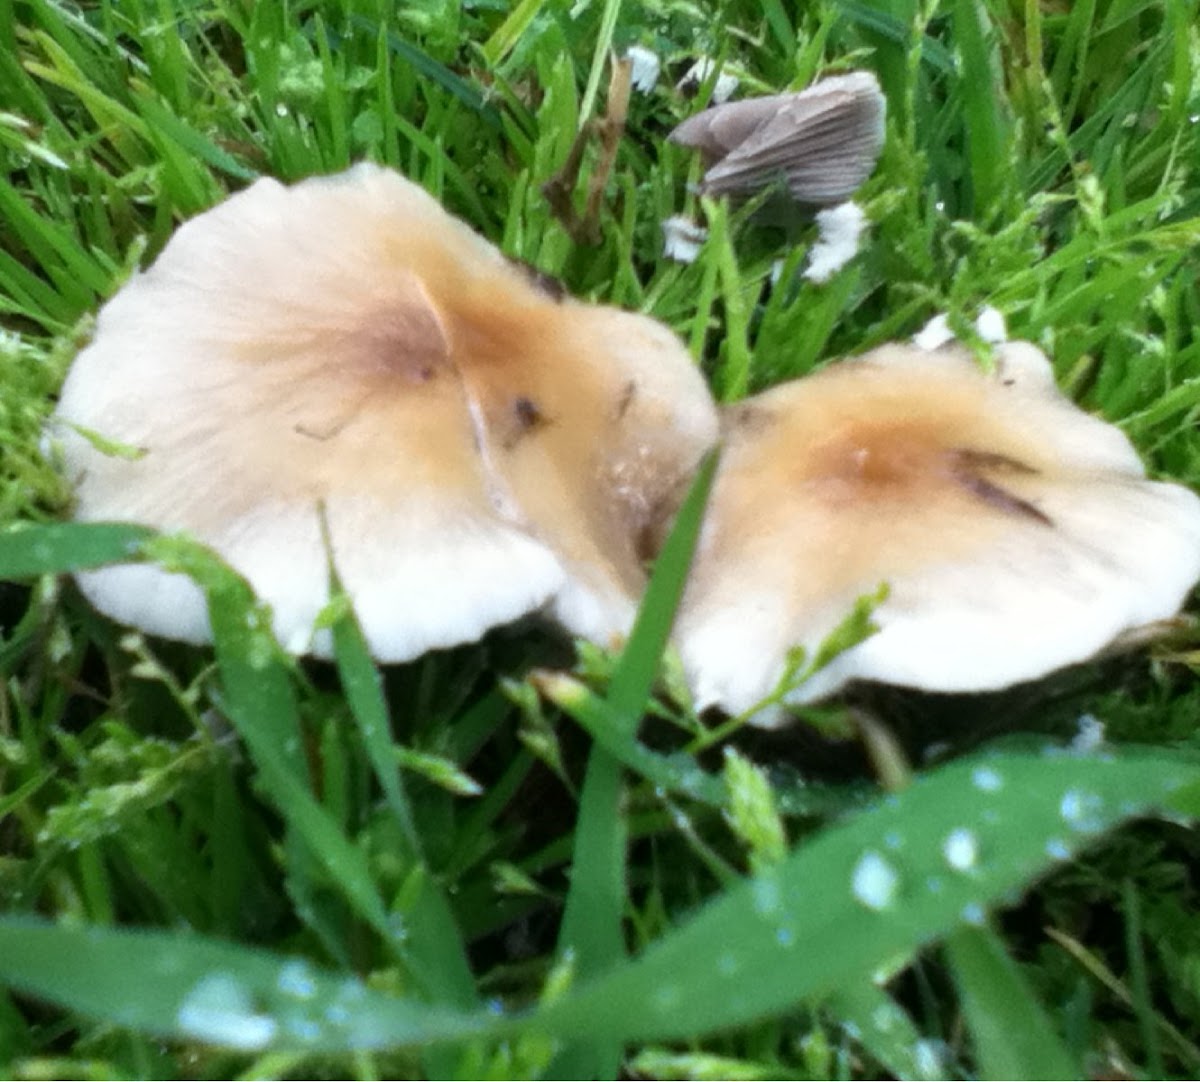 Unidentified mushroom 